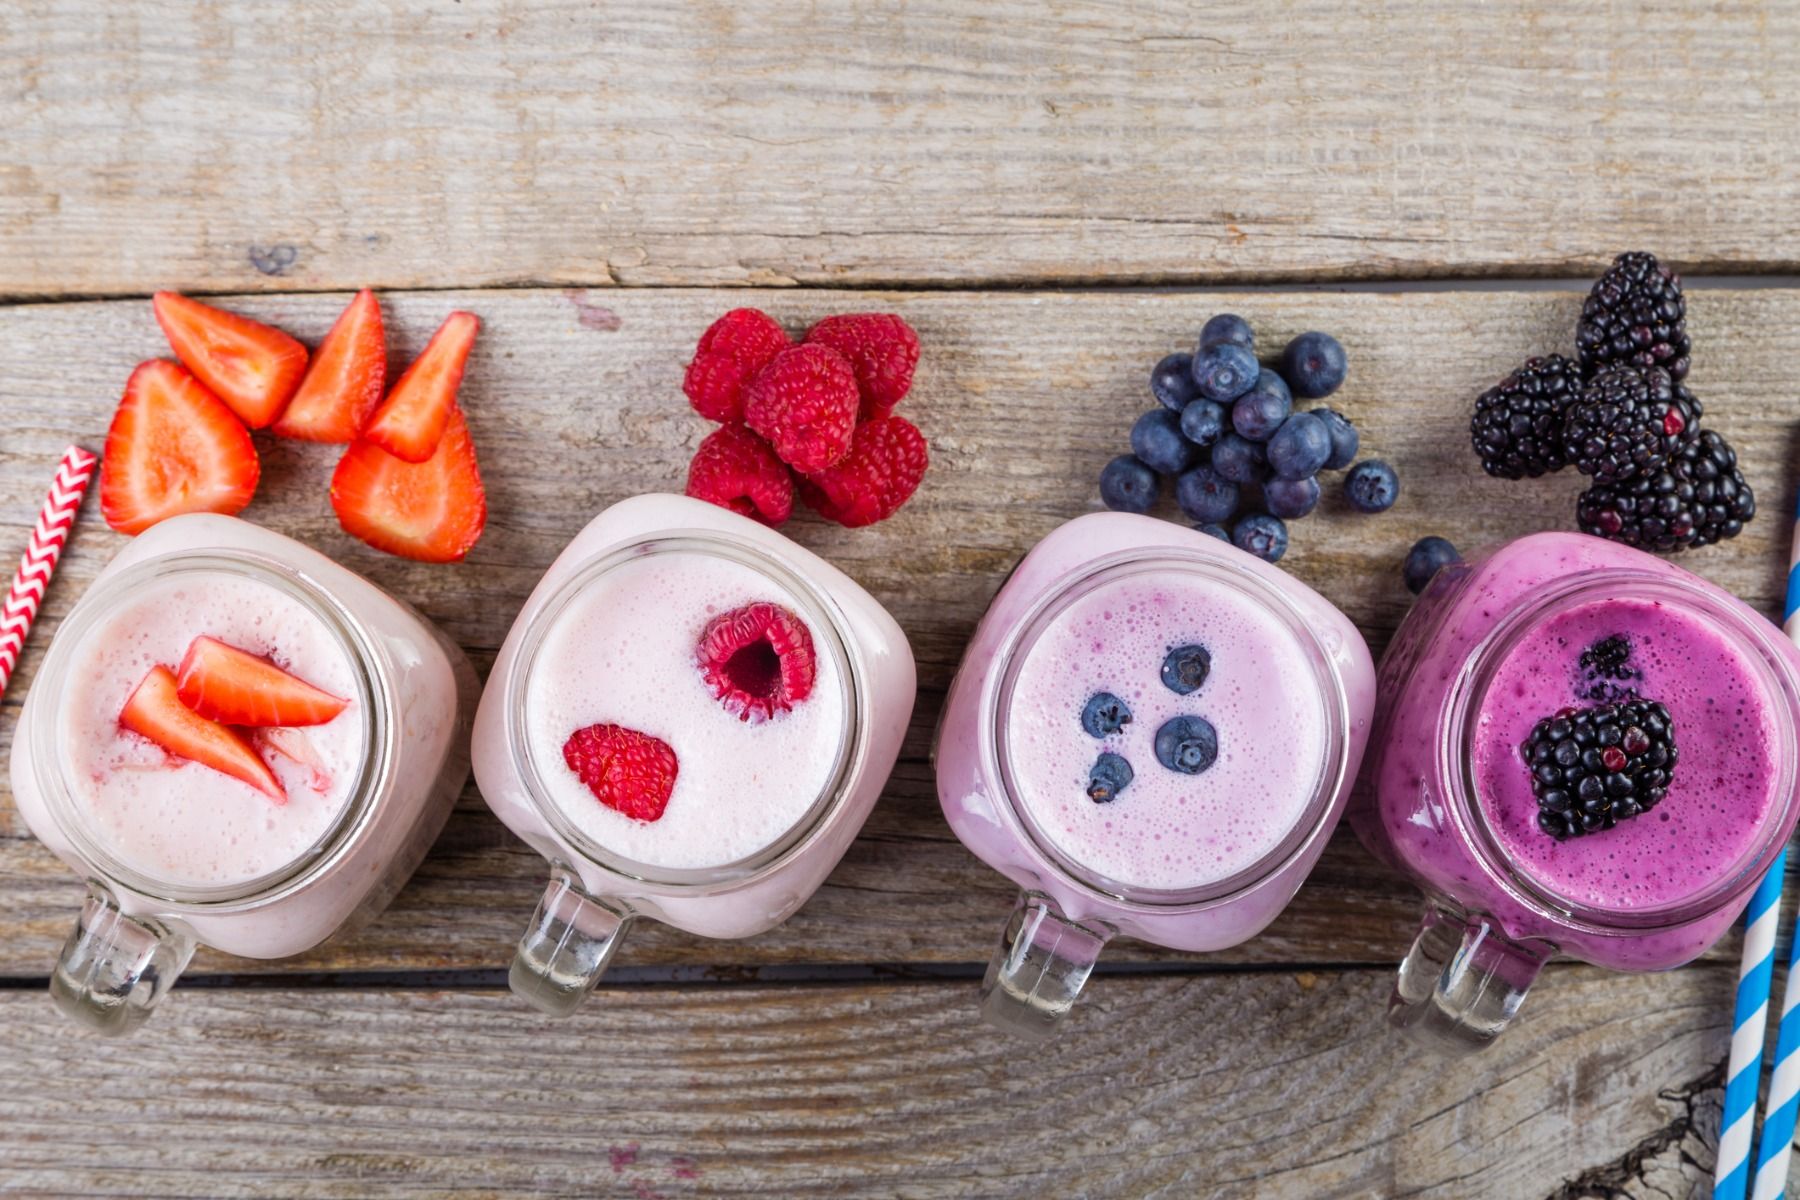 Top 10 snacks to get rid of sugar cravings